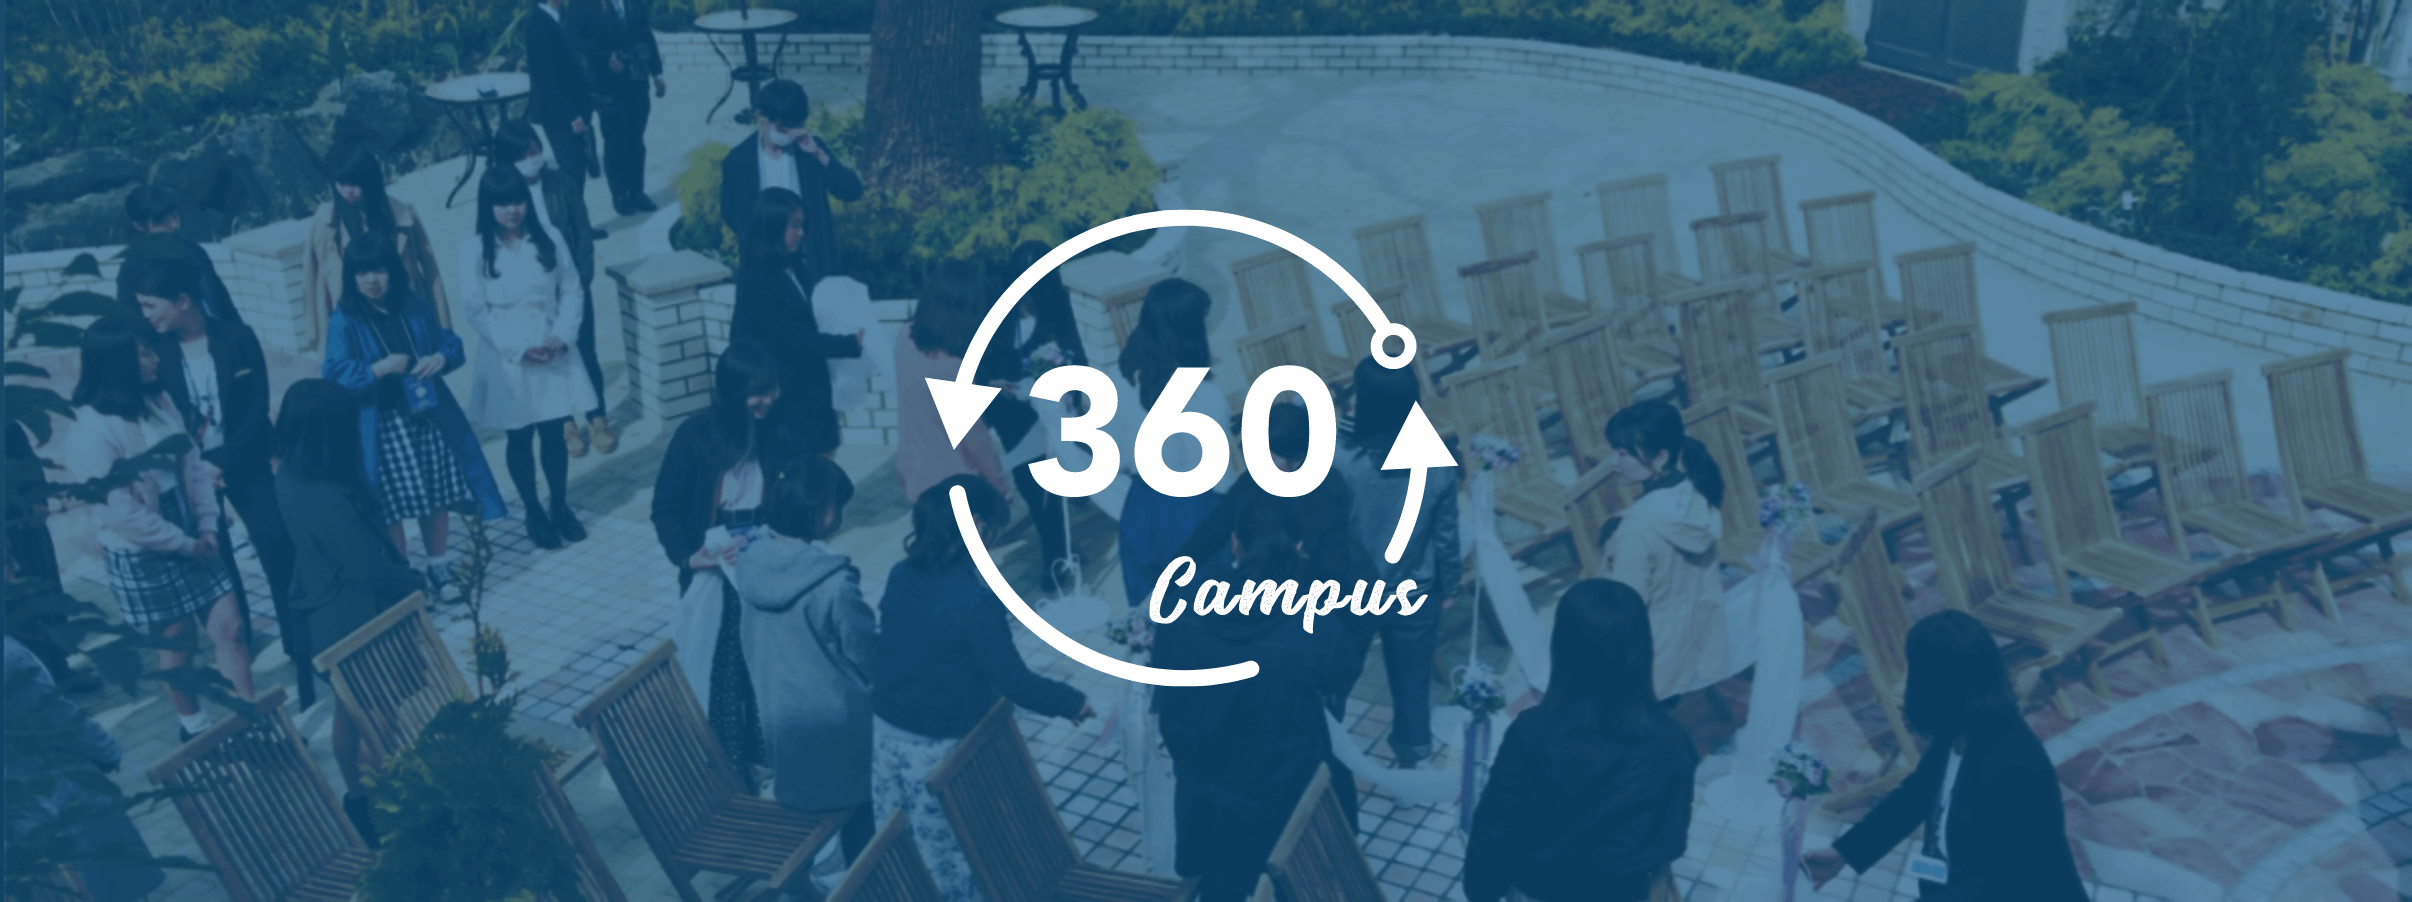 360° campus